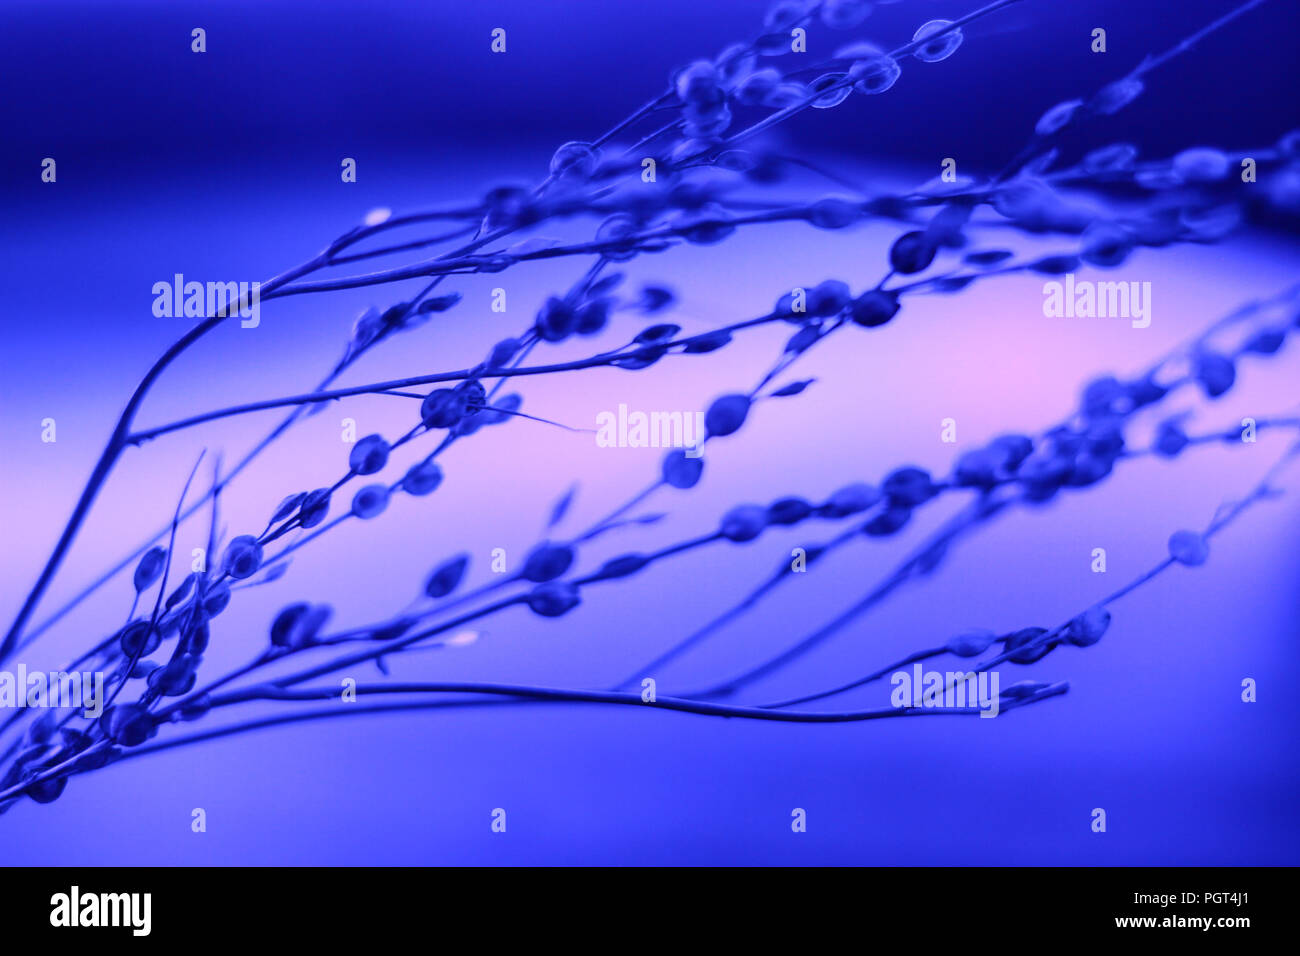 Pflanzen in Neon Fluoreszenz blaues Licht Stockfotografie - Alamy